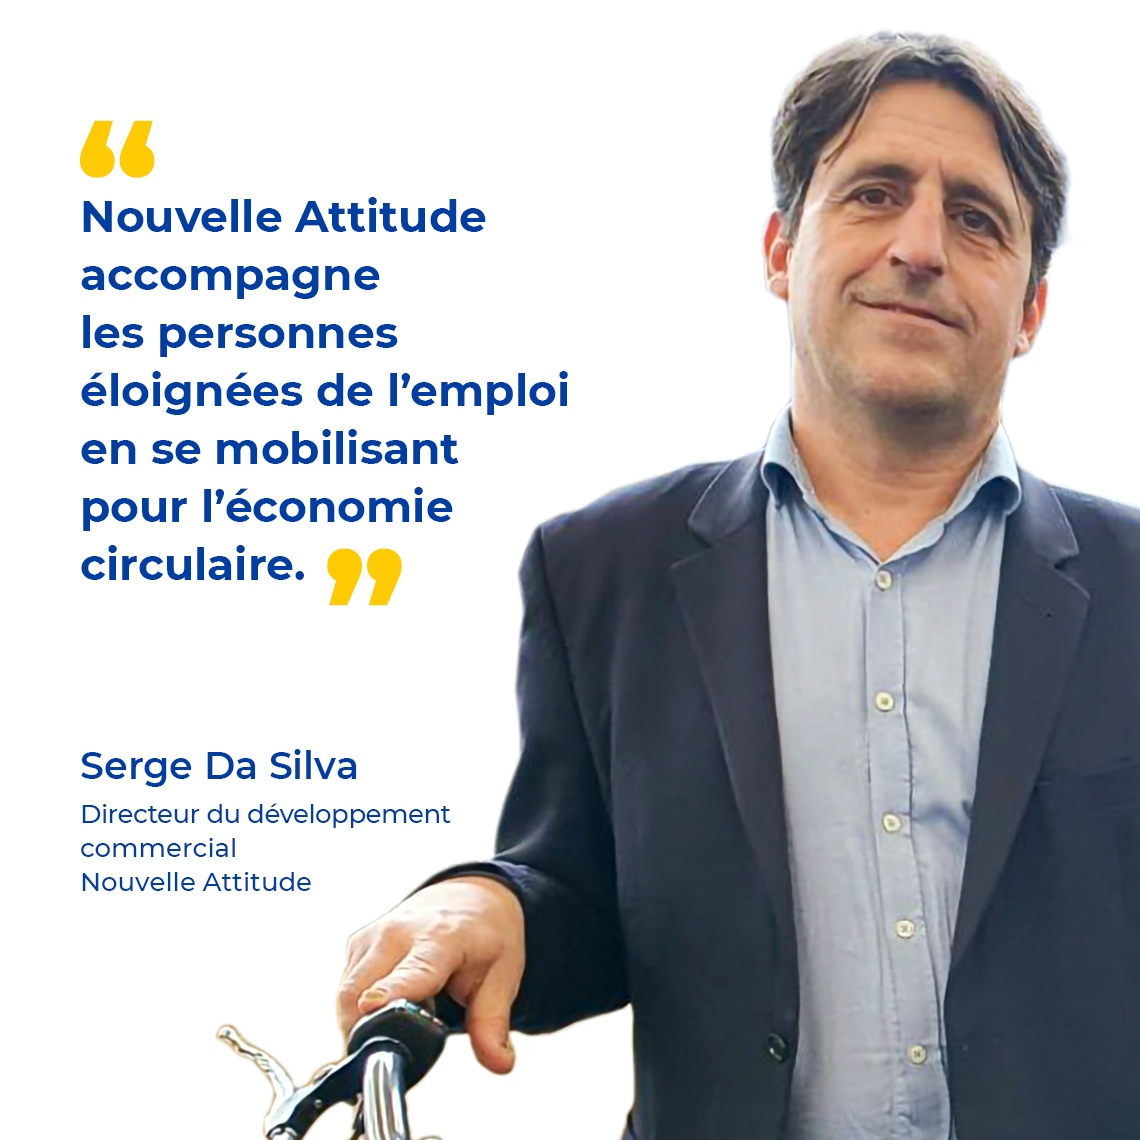 Photo de Serge Da Silva et texte : "Nouvelle Attitude accompagne les personnes éloignées de l’emploi en se mobilisant pour l’économie circulaire."